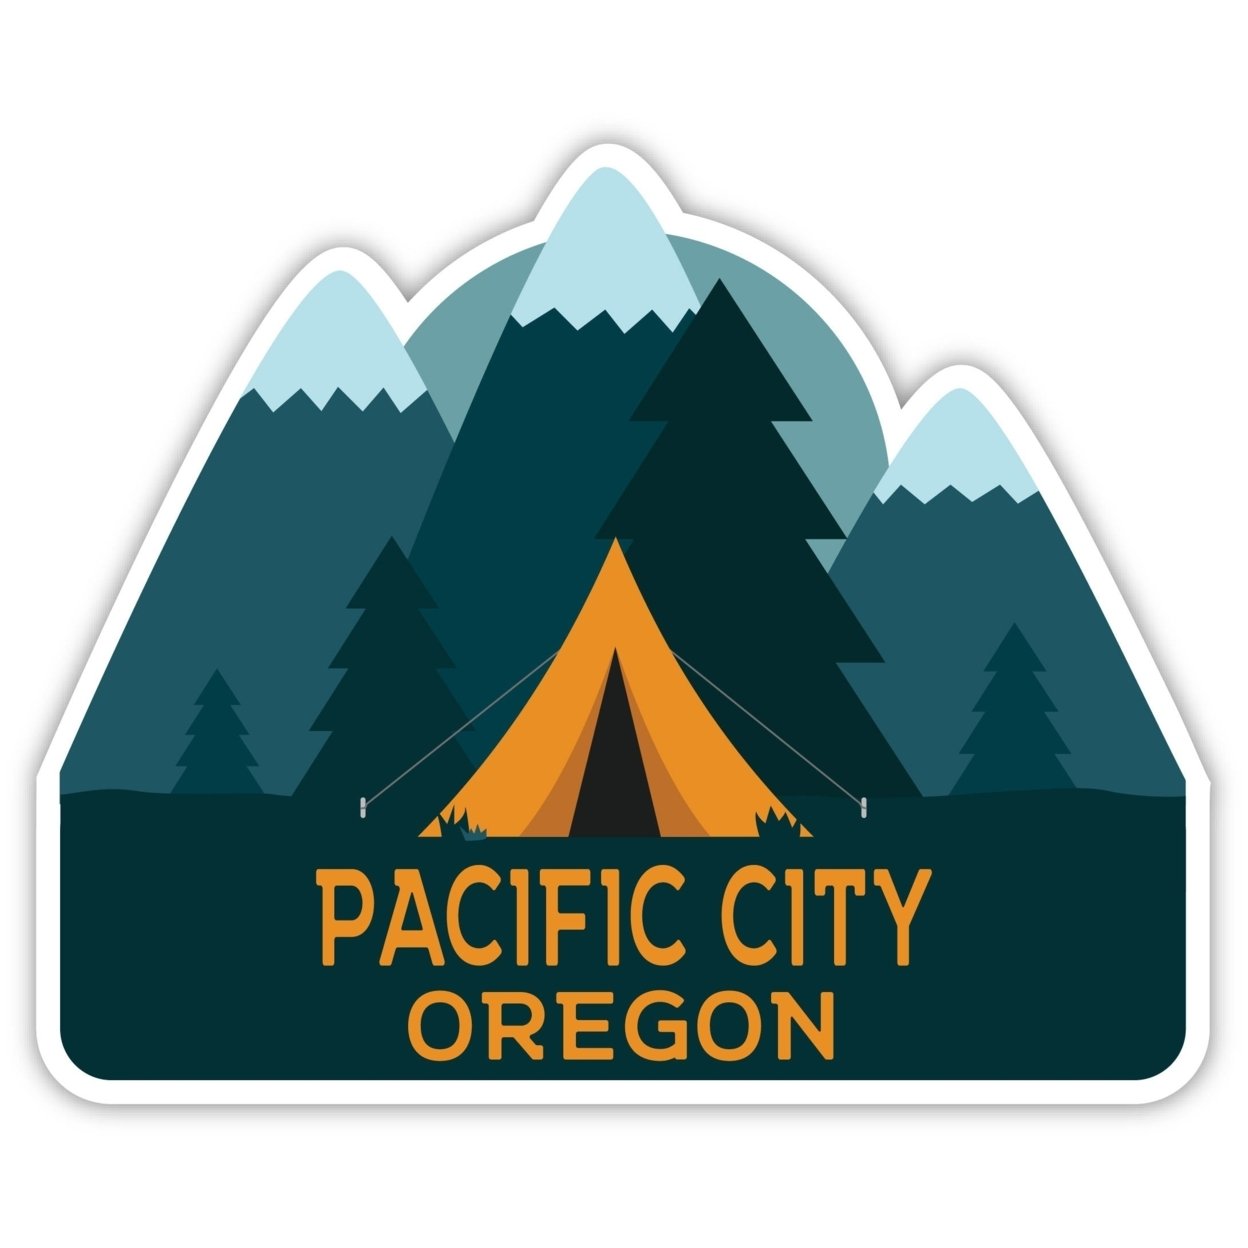 Pacific City Oregon Souvenir Decorative Stickers (Choose Theme And Size) - Single Unit, 2-Inch, Tent